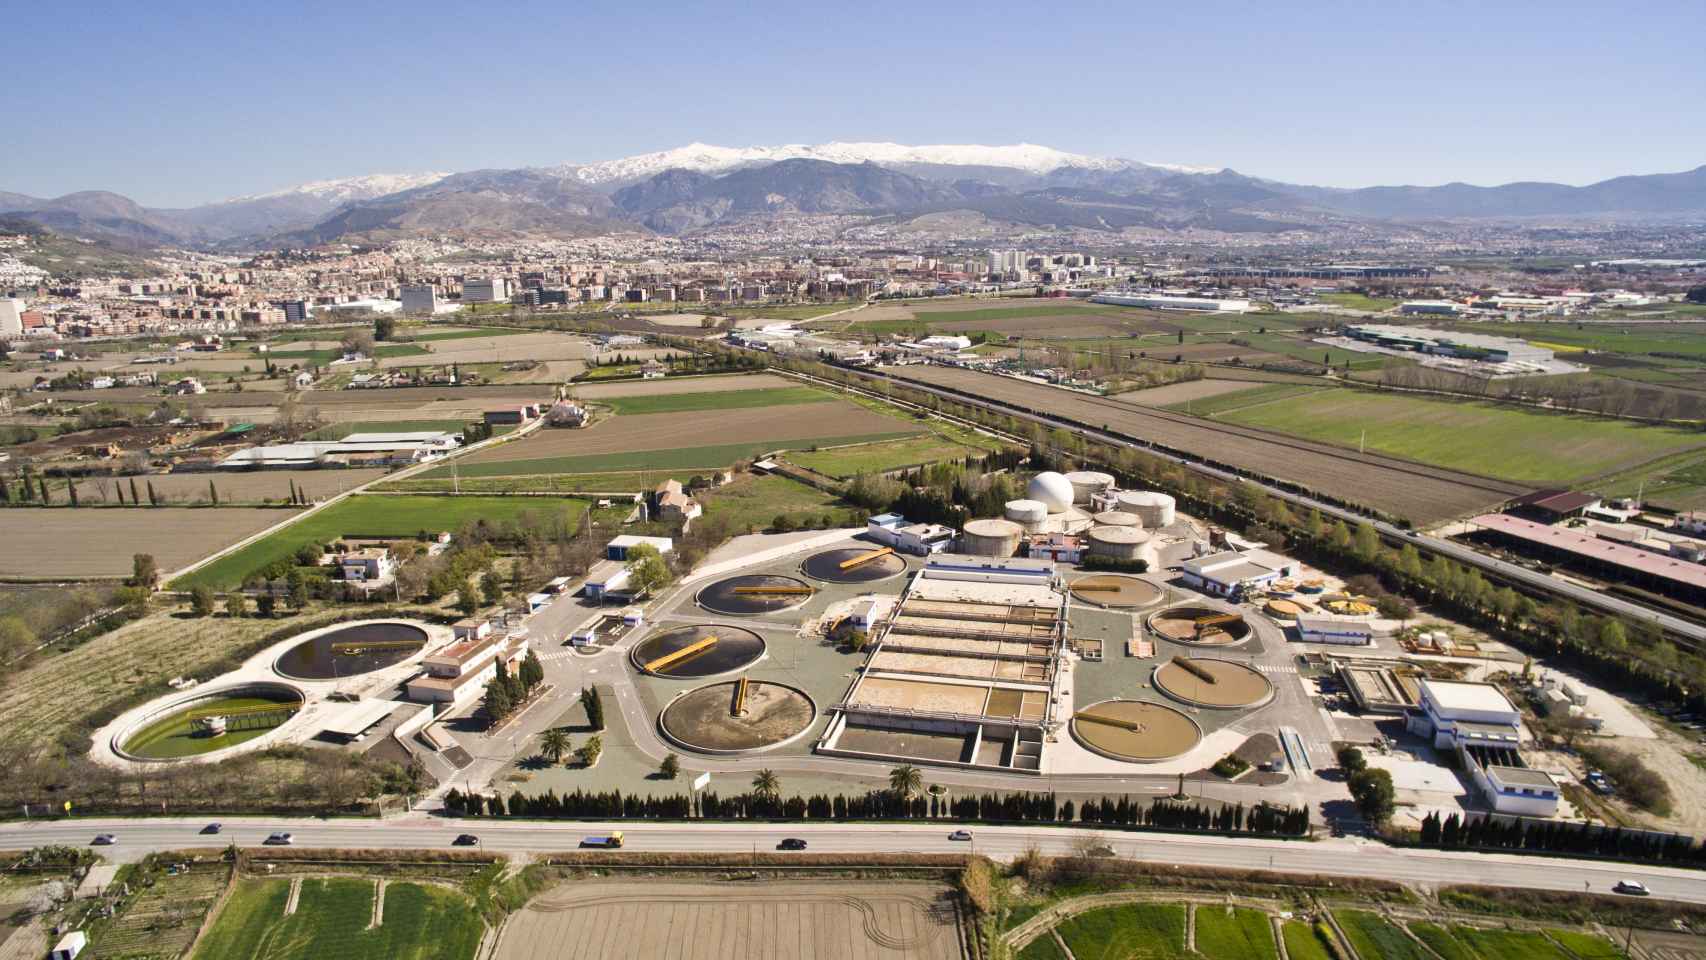 El modelo de biofactorías, desarrollado por Agbar, se basa en los principios de la economía circular. Aquí la biofactoría Sur de Granada.